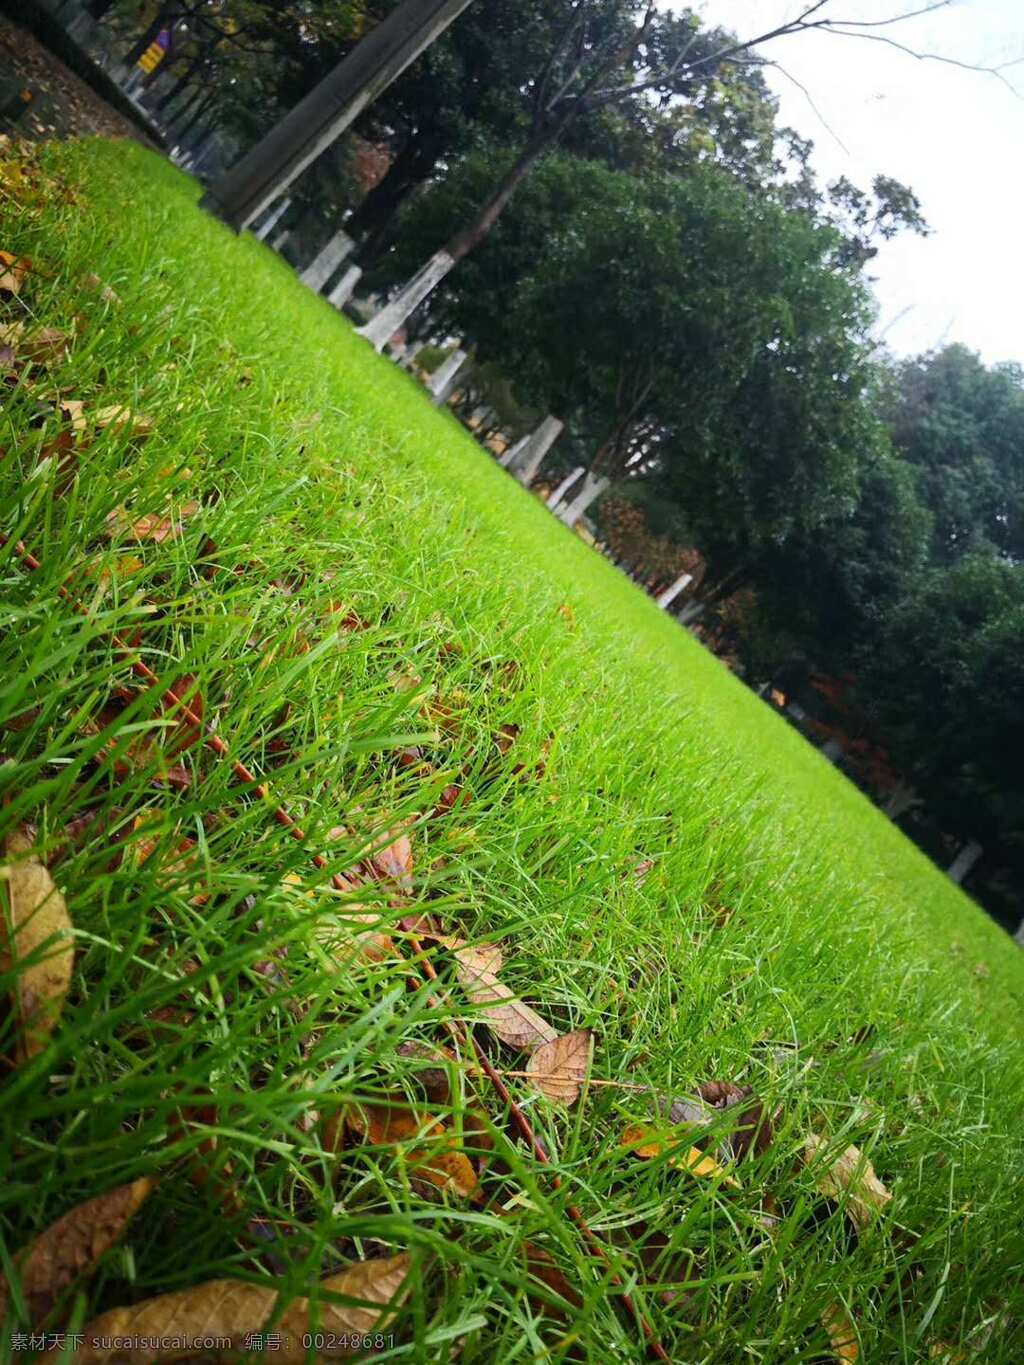 青草 草 草坪 落叶 绿草 黄叶 树林 雨后 雨天 自然景观 自然风景